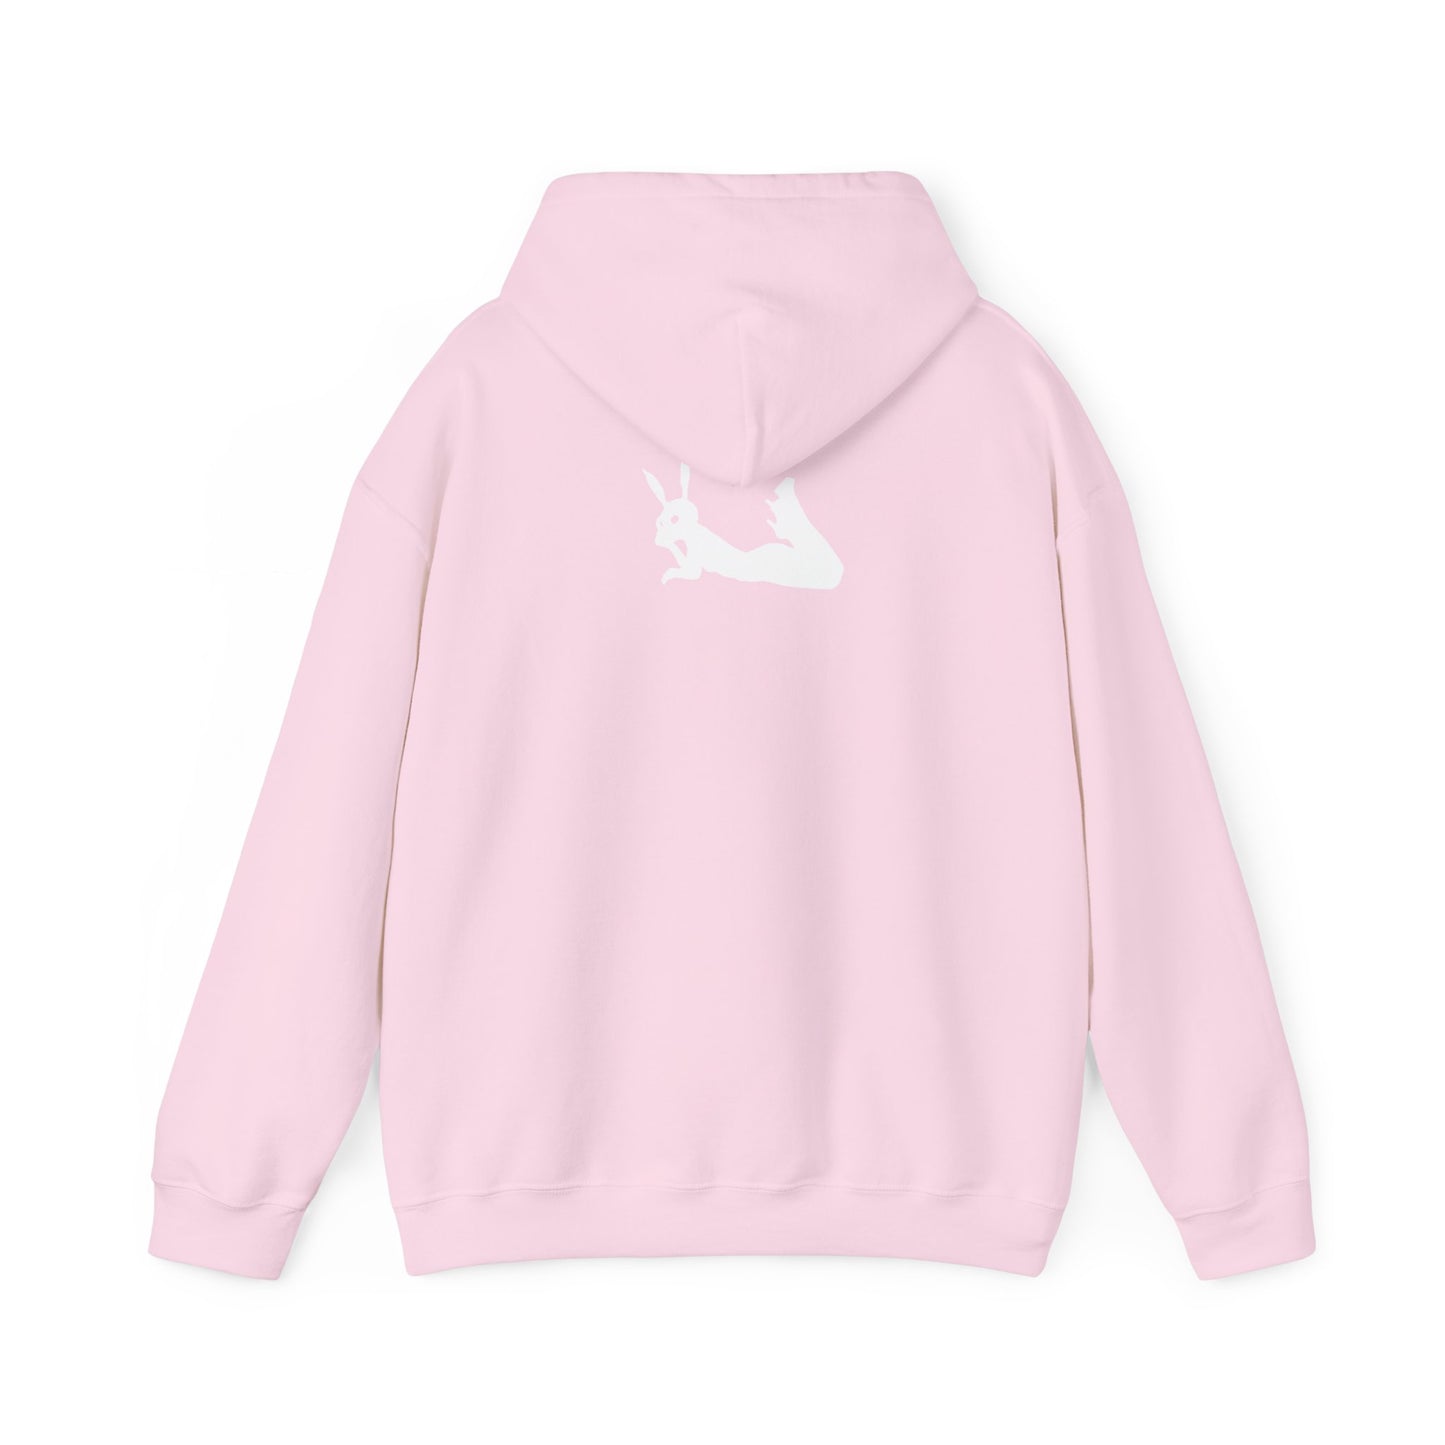 Bunny Girls Love Girls V Day hoodie